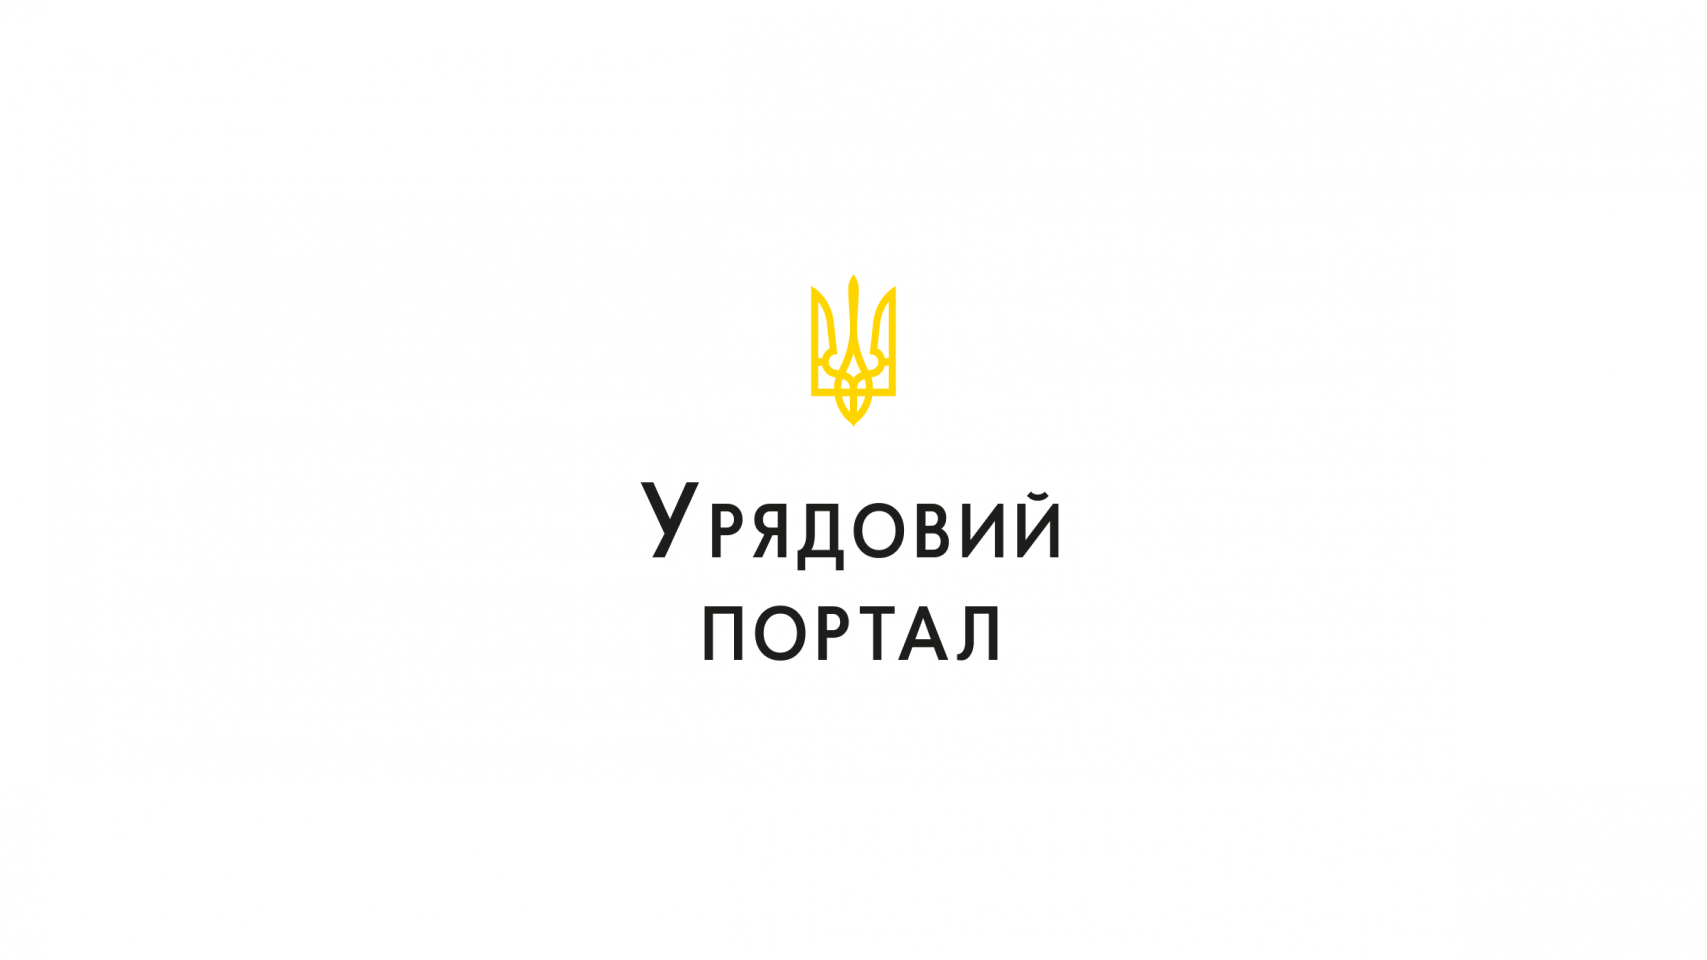 http://dunrada.gov.ua/uploadfile/archive_news/2020/03/17/2020-03-17_3911/images/images-40534.png